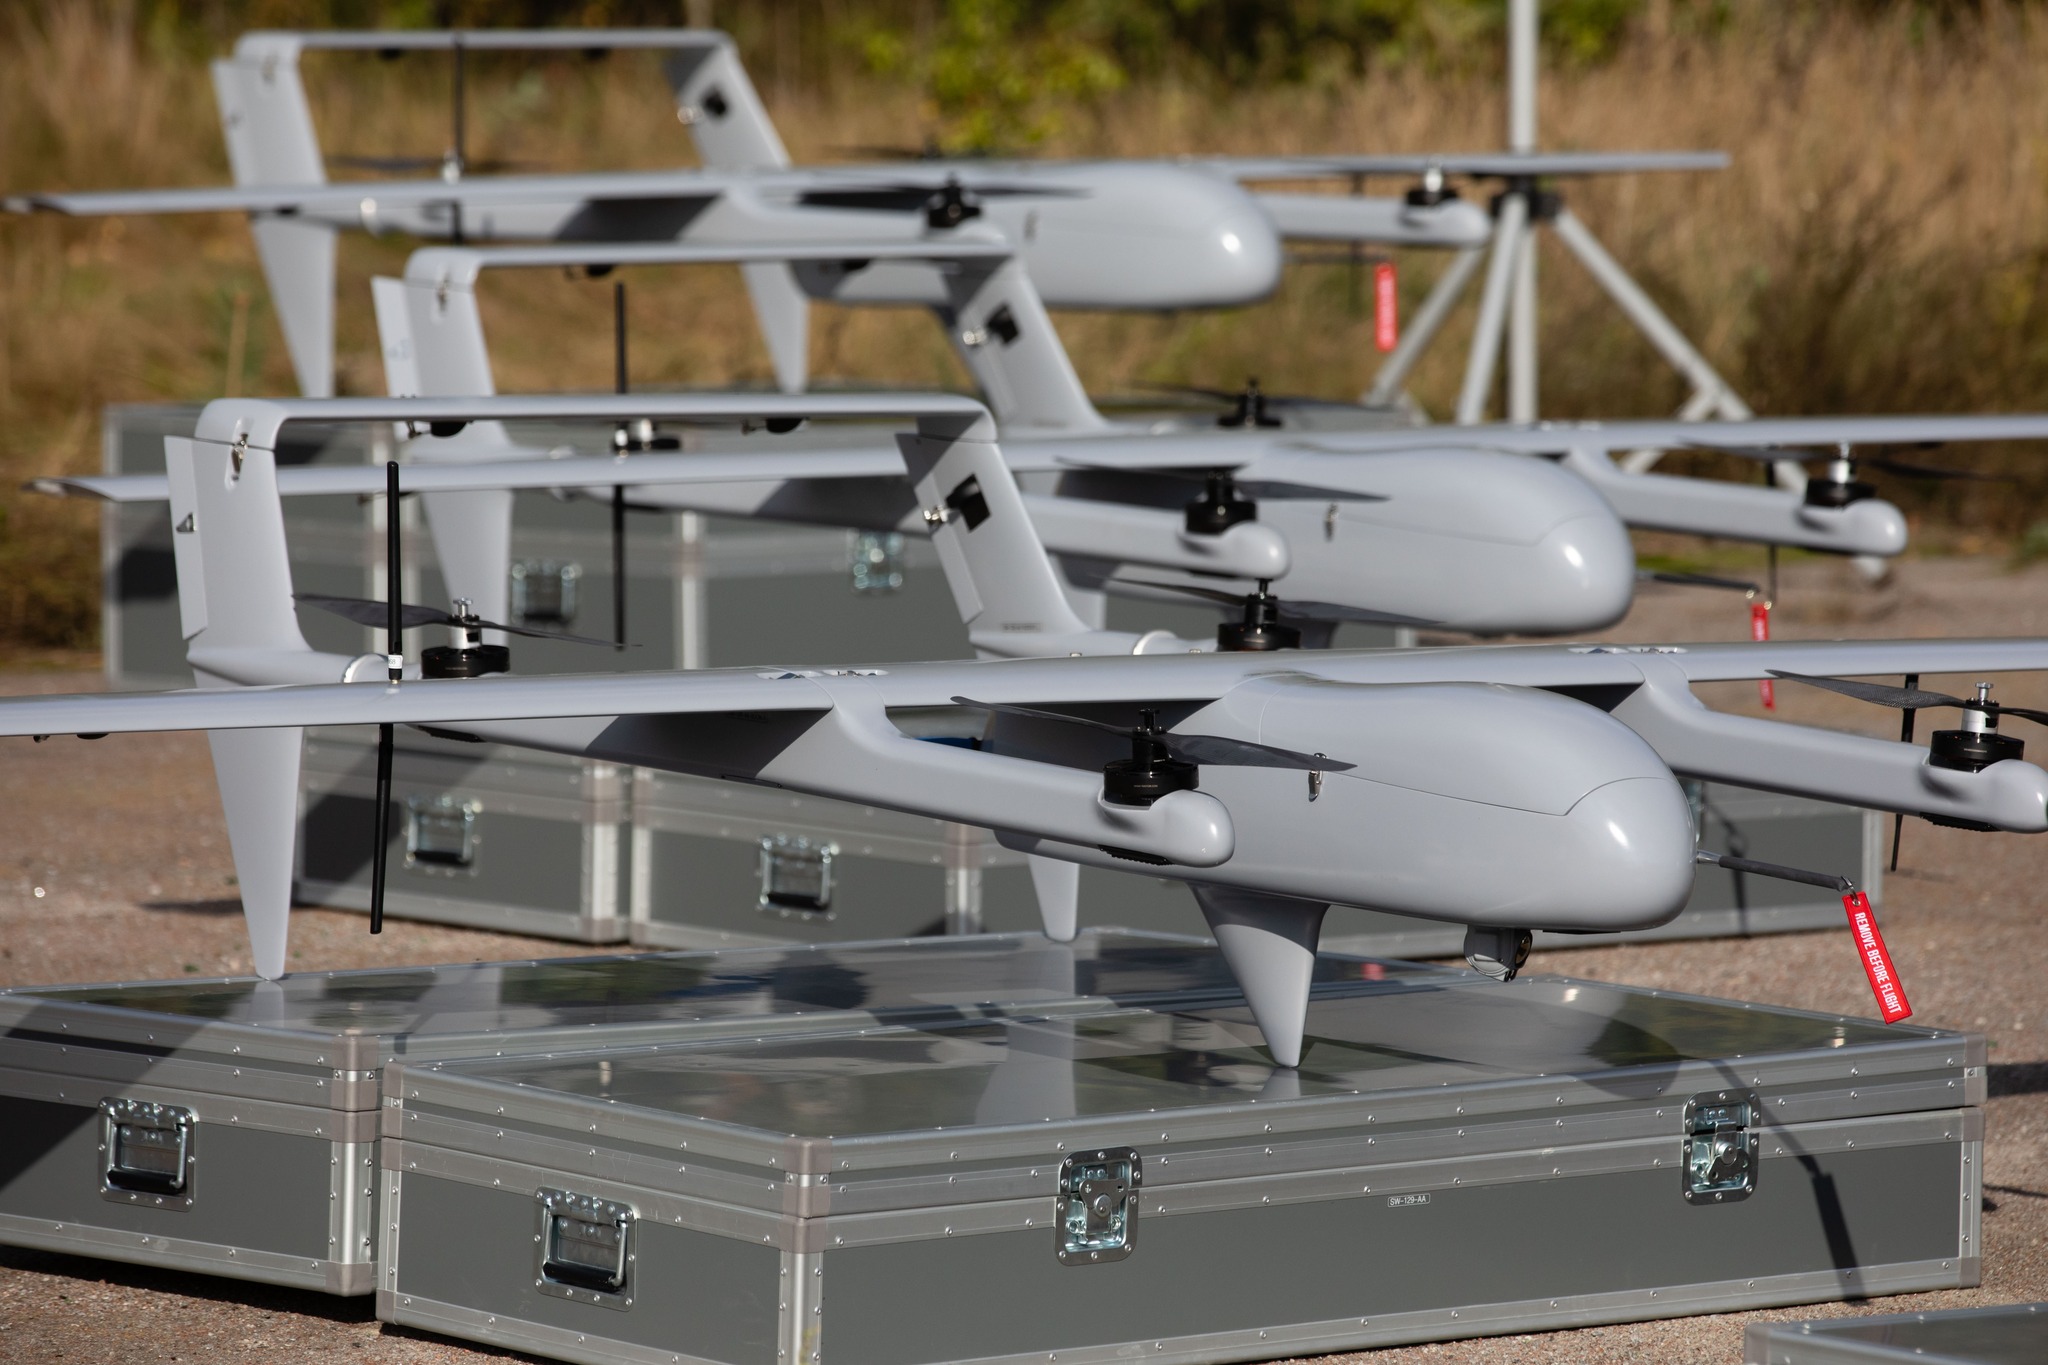 Los voluntarios compraron seis drones H10 Poseidon para las AFU, tienen óptica israelí, cámara de imagen térmica y pueden volar hasta 150 km